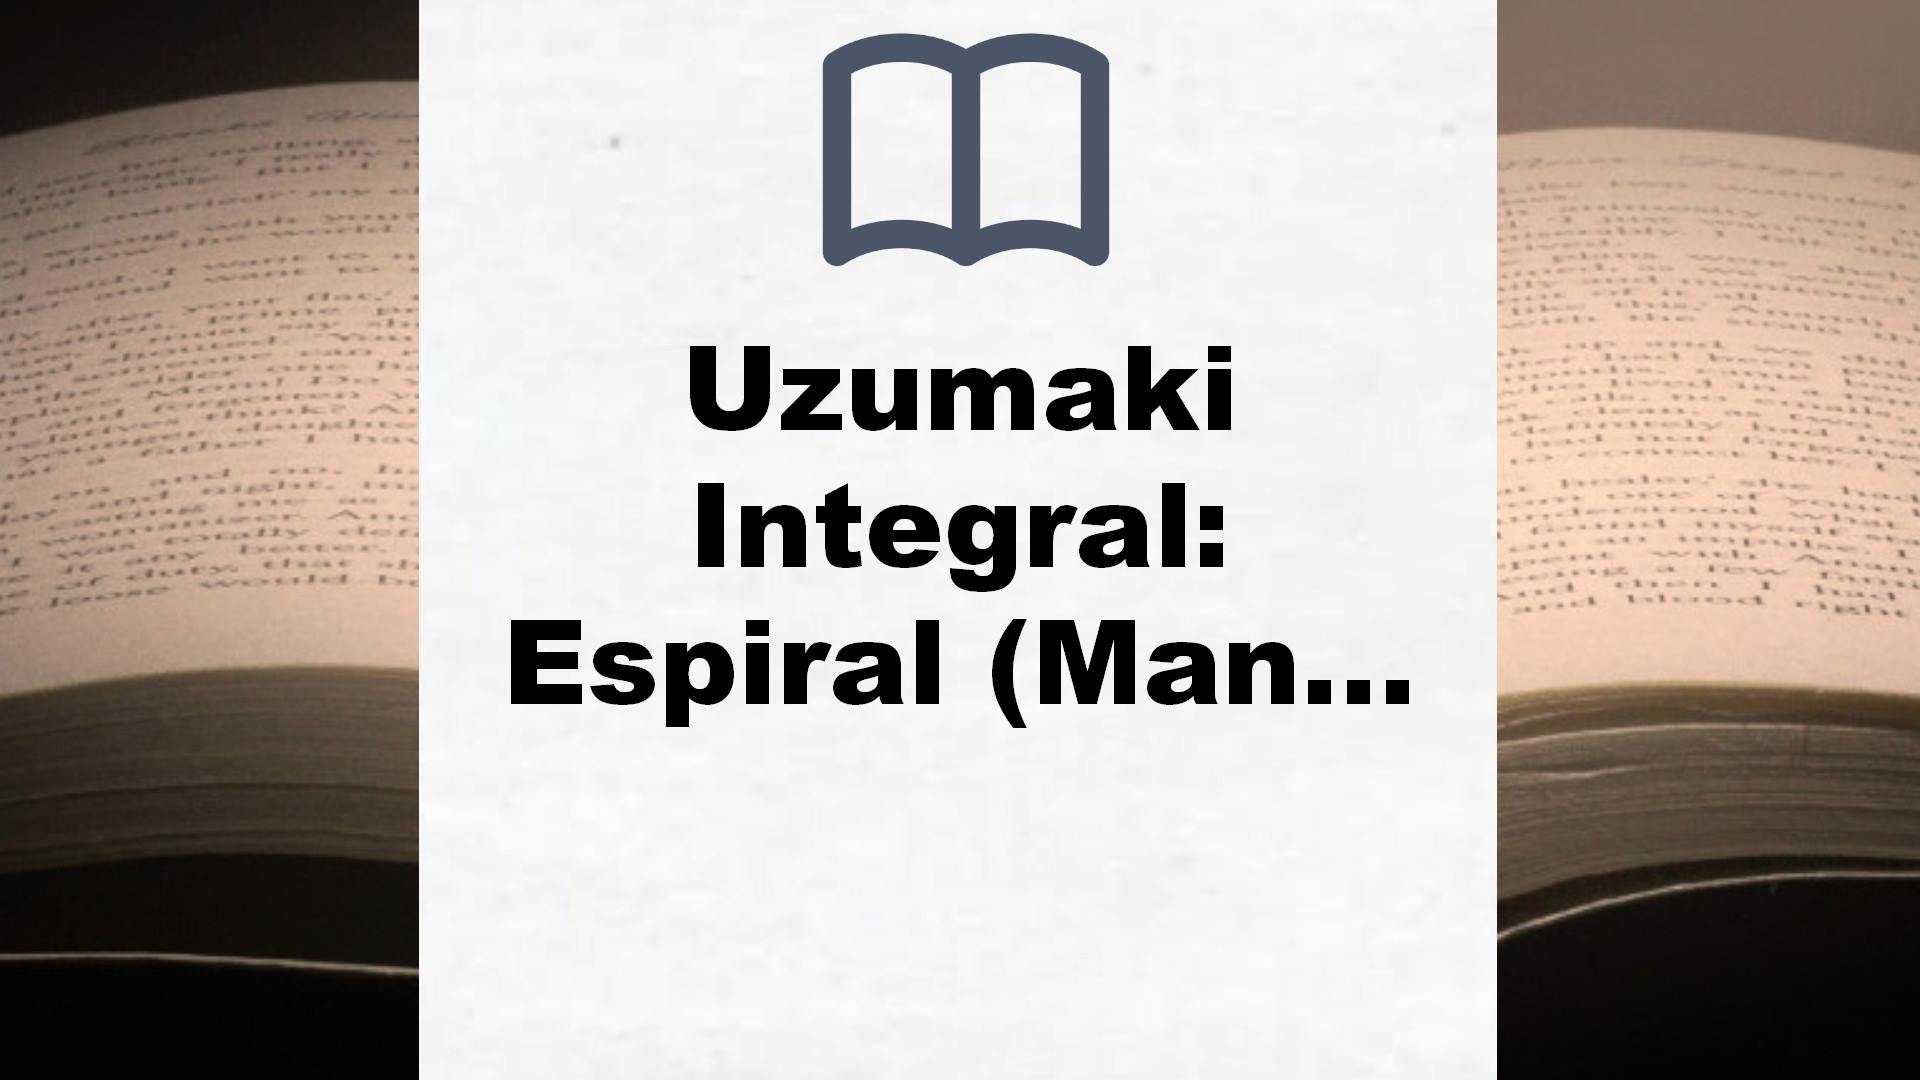 Uzumaki Integral: Espiral (Manga Seinen) – Reseña del libro